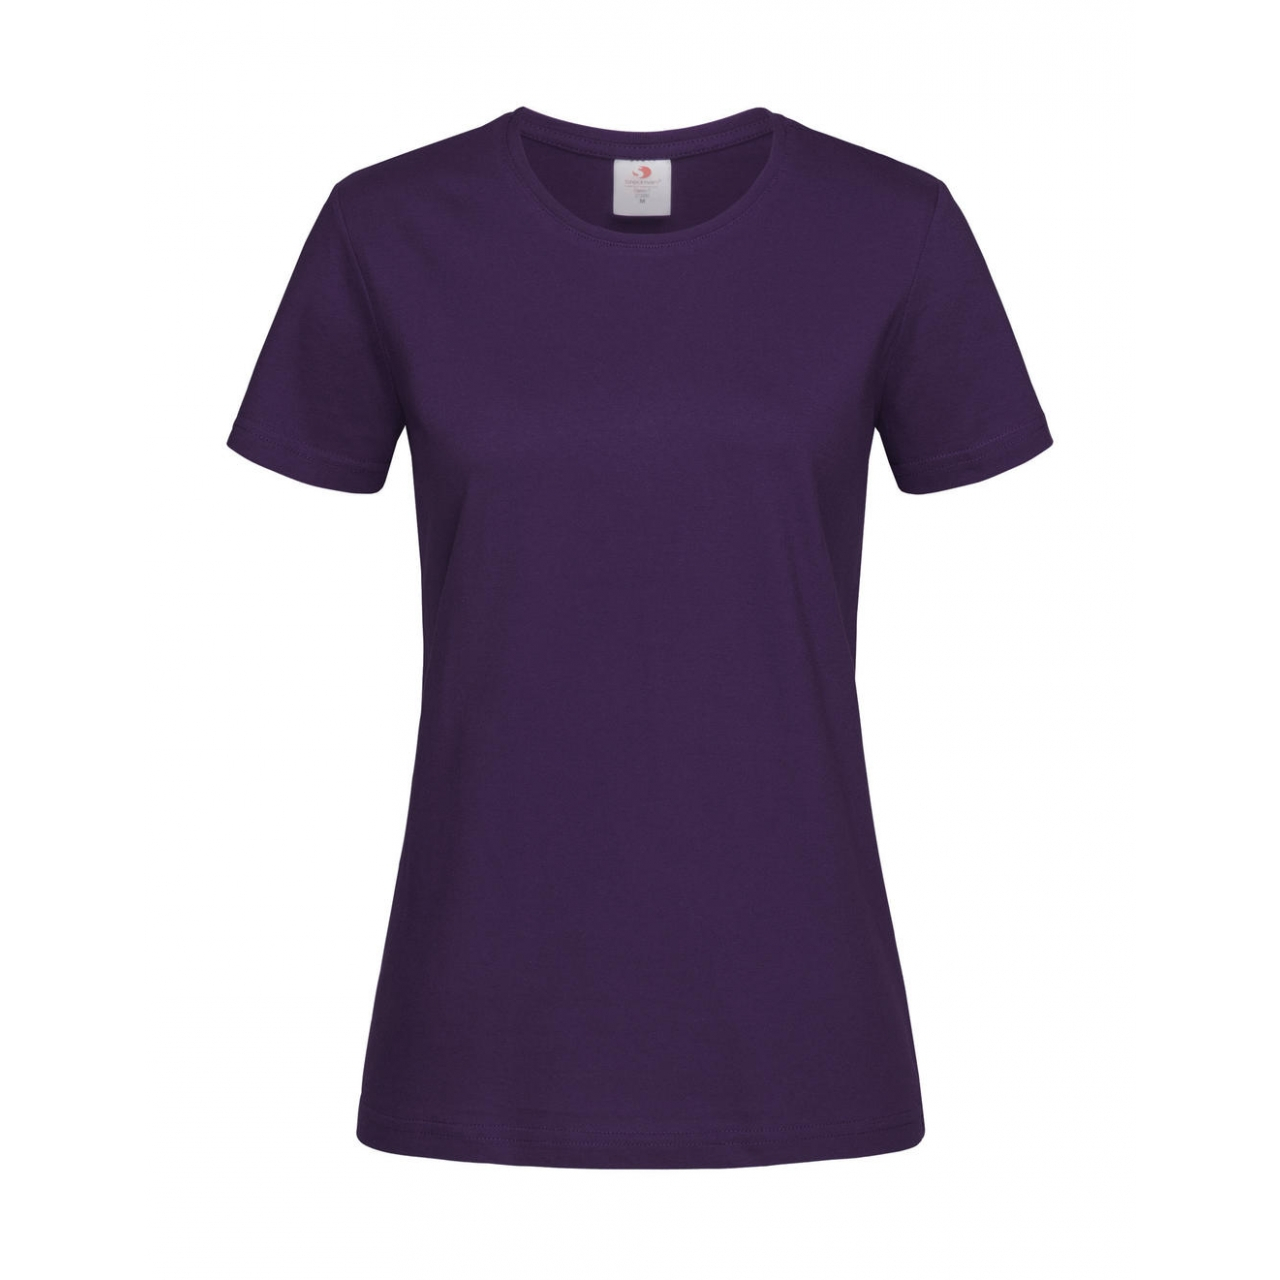 Tričko dámské Stedman Fitted s kulatým výstřihem - fialové, XL